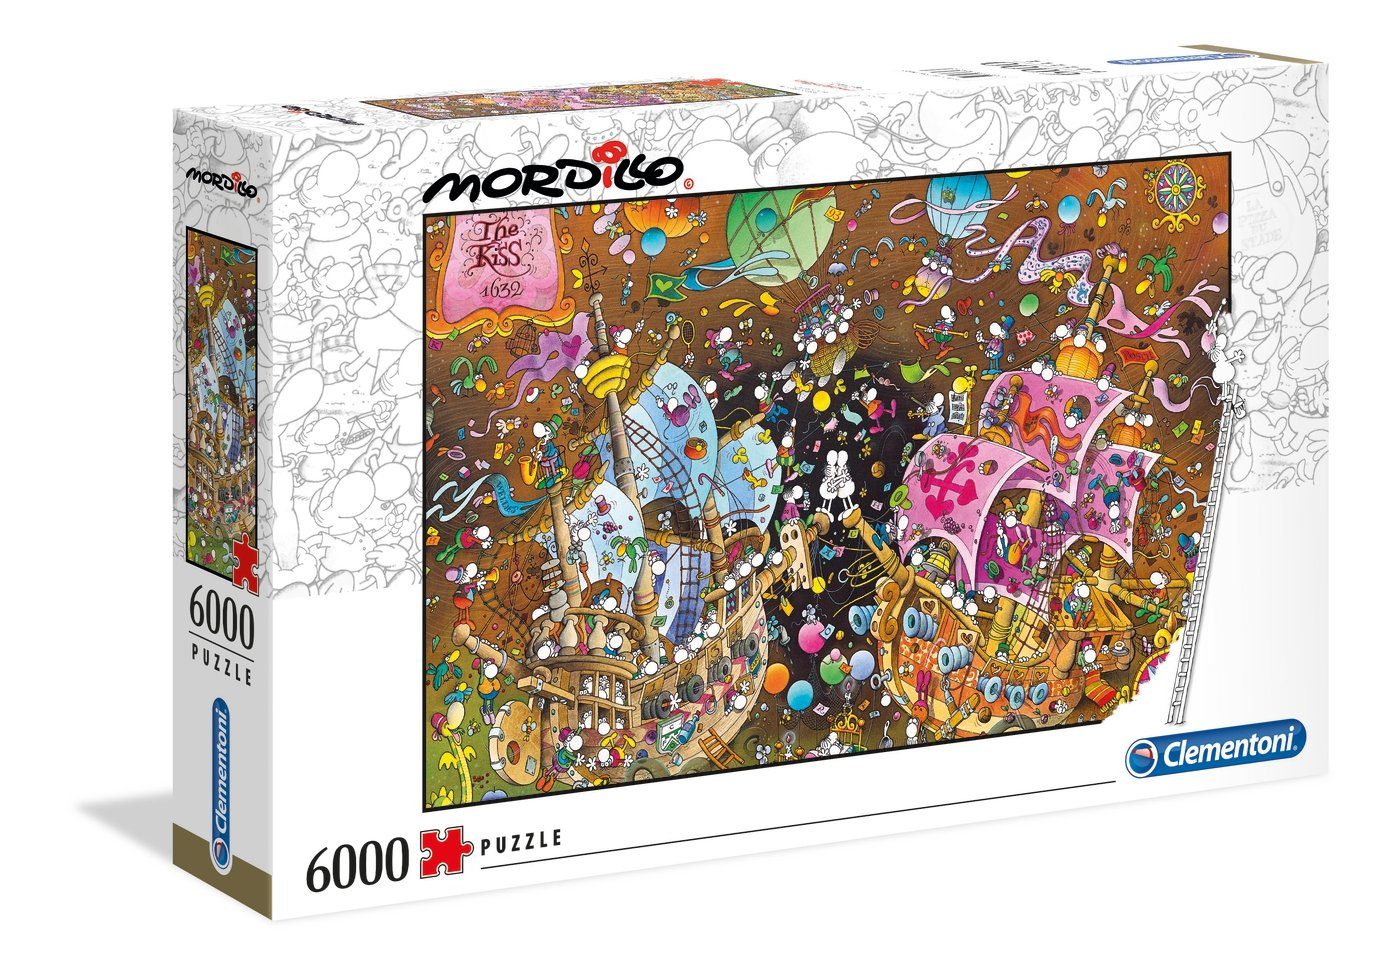 Clementoni® Puzzle Der Kuss - Mordillo Collection, 6000 Puzzleteile